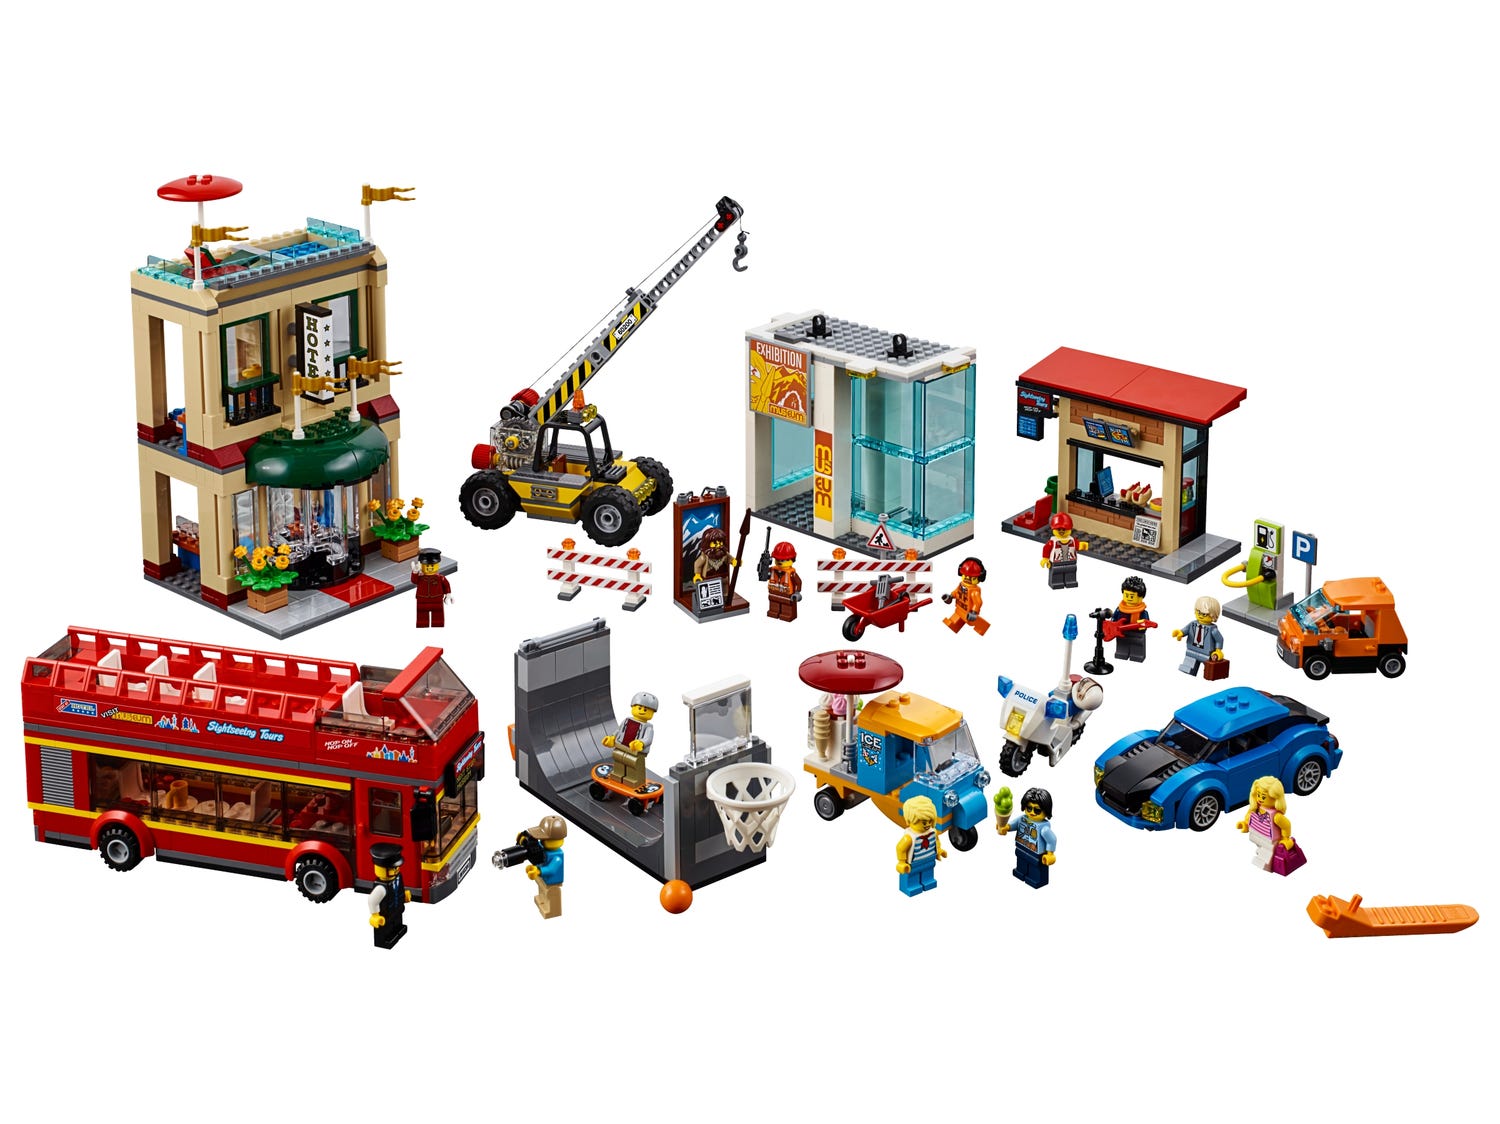 La ville 60200 | City | Boutique LEGO® officielle FR